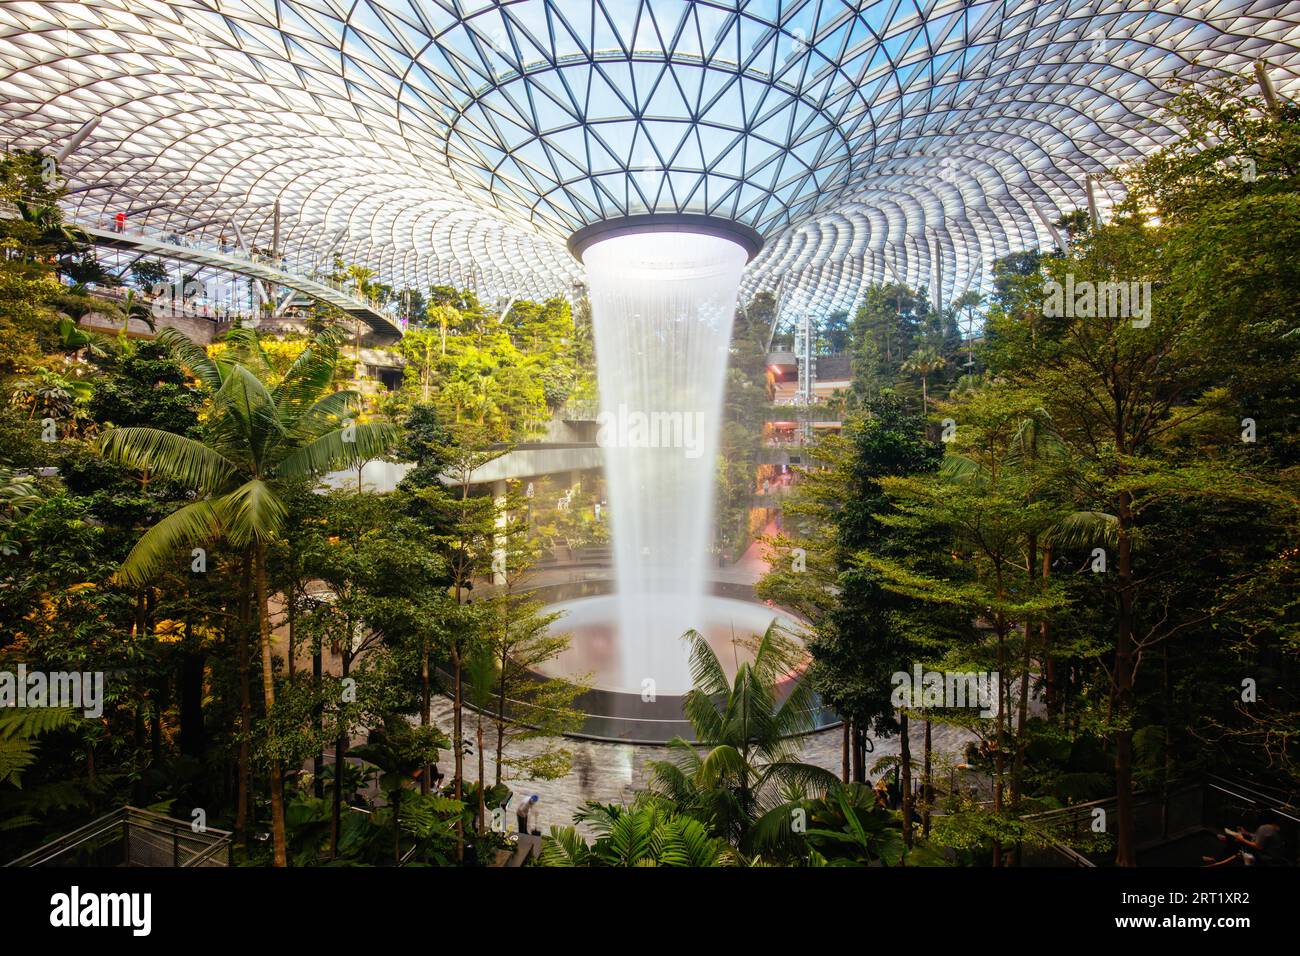 Changi, Singapur, November 26 2019: Das weltberühmte Juwel am Flughafen Changi, dem größten Indoor-Wasserbrunnen der Welt Stockfoto